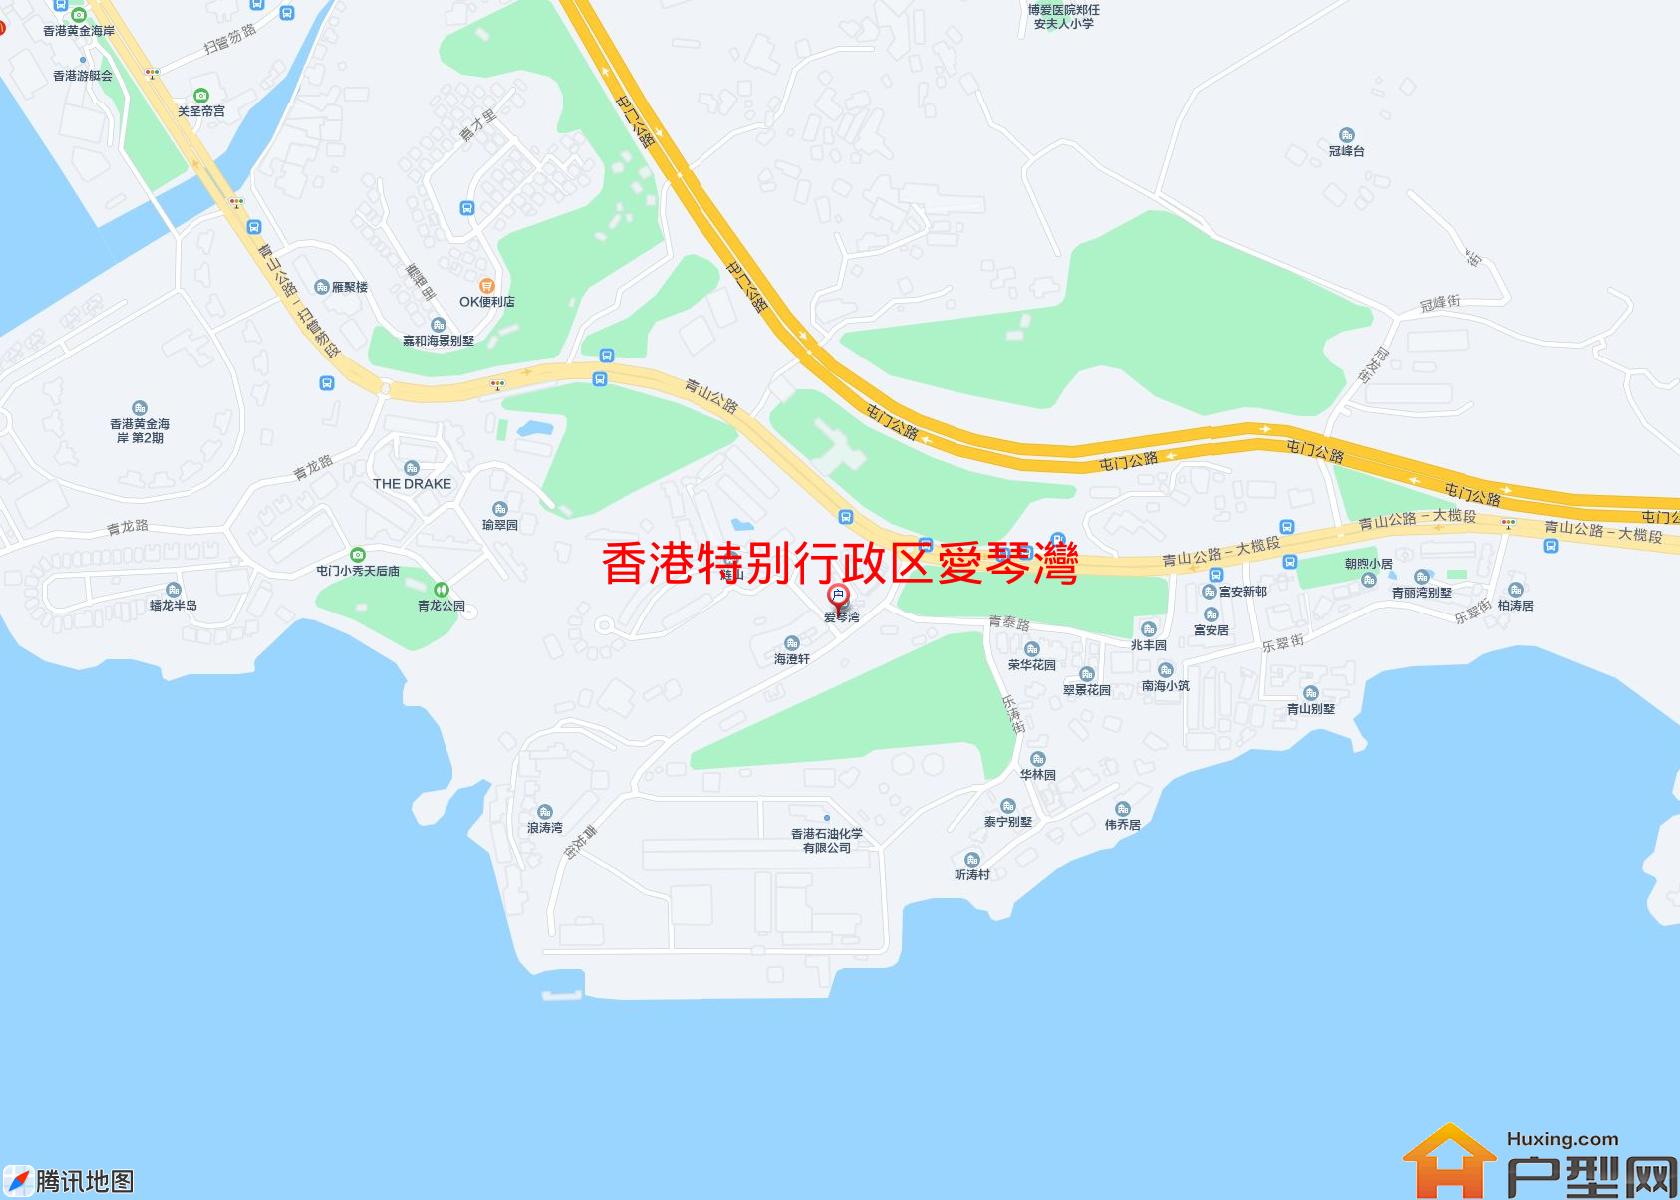 愛琴灣小区 - 户型网